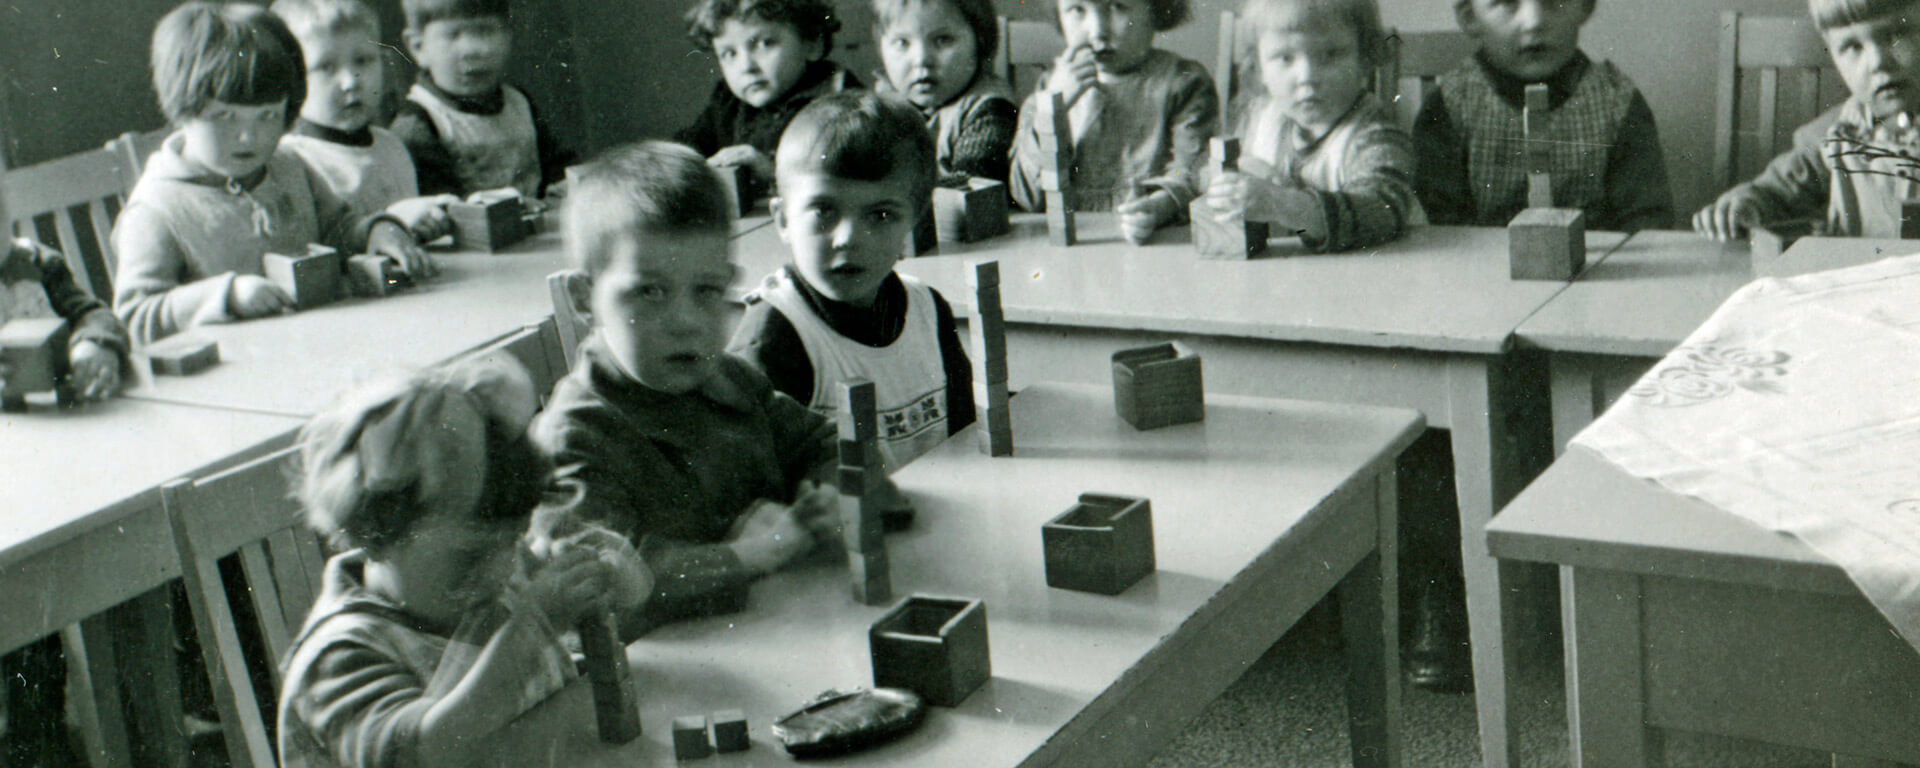 Lapsia rakentelemassa palikoista torneja Kotivaran lastentarhassa, 1920-luvun loppu. Lastentarhamuseon valokuvakokoelma..